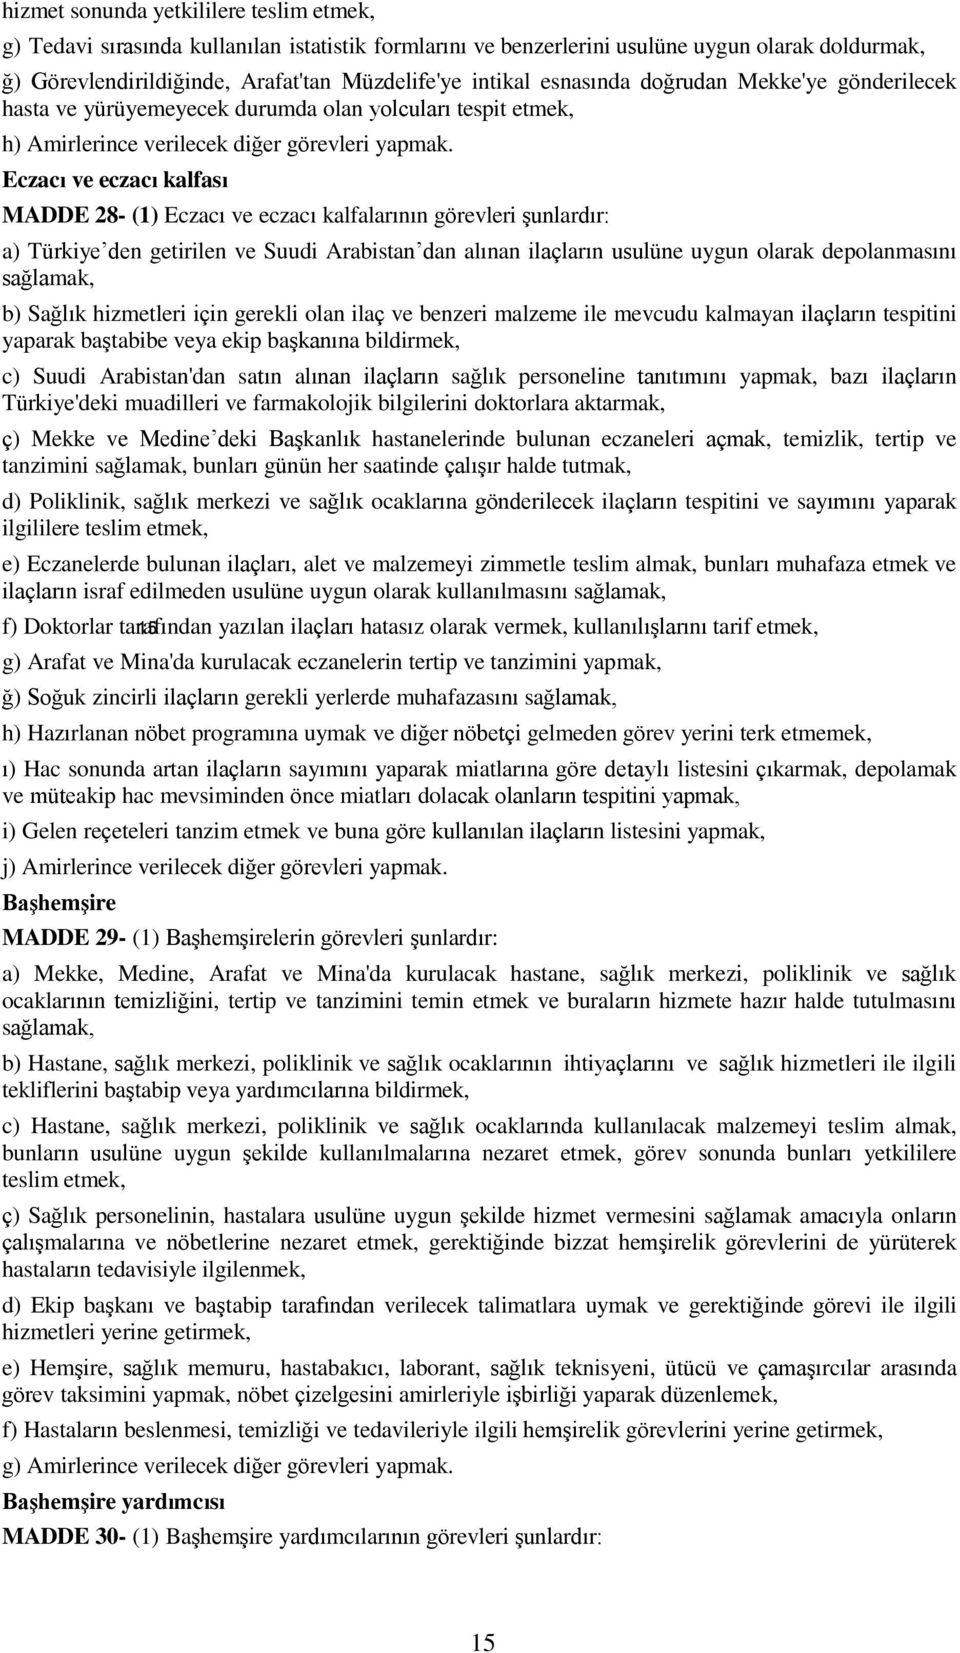 Eczacı ve eczacı kalfası MADDE 28- (1) Eczacı ve eczacı kalfalarının görevleri şunlardır: a) Türkiye den getirilen ve Suudi Arabistan dan alınan ilaçların usulüne uygun olarak depolanmasını b) Sağlık